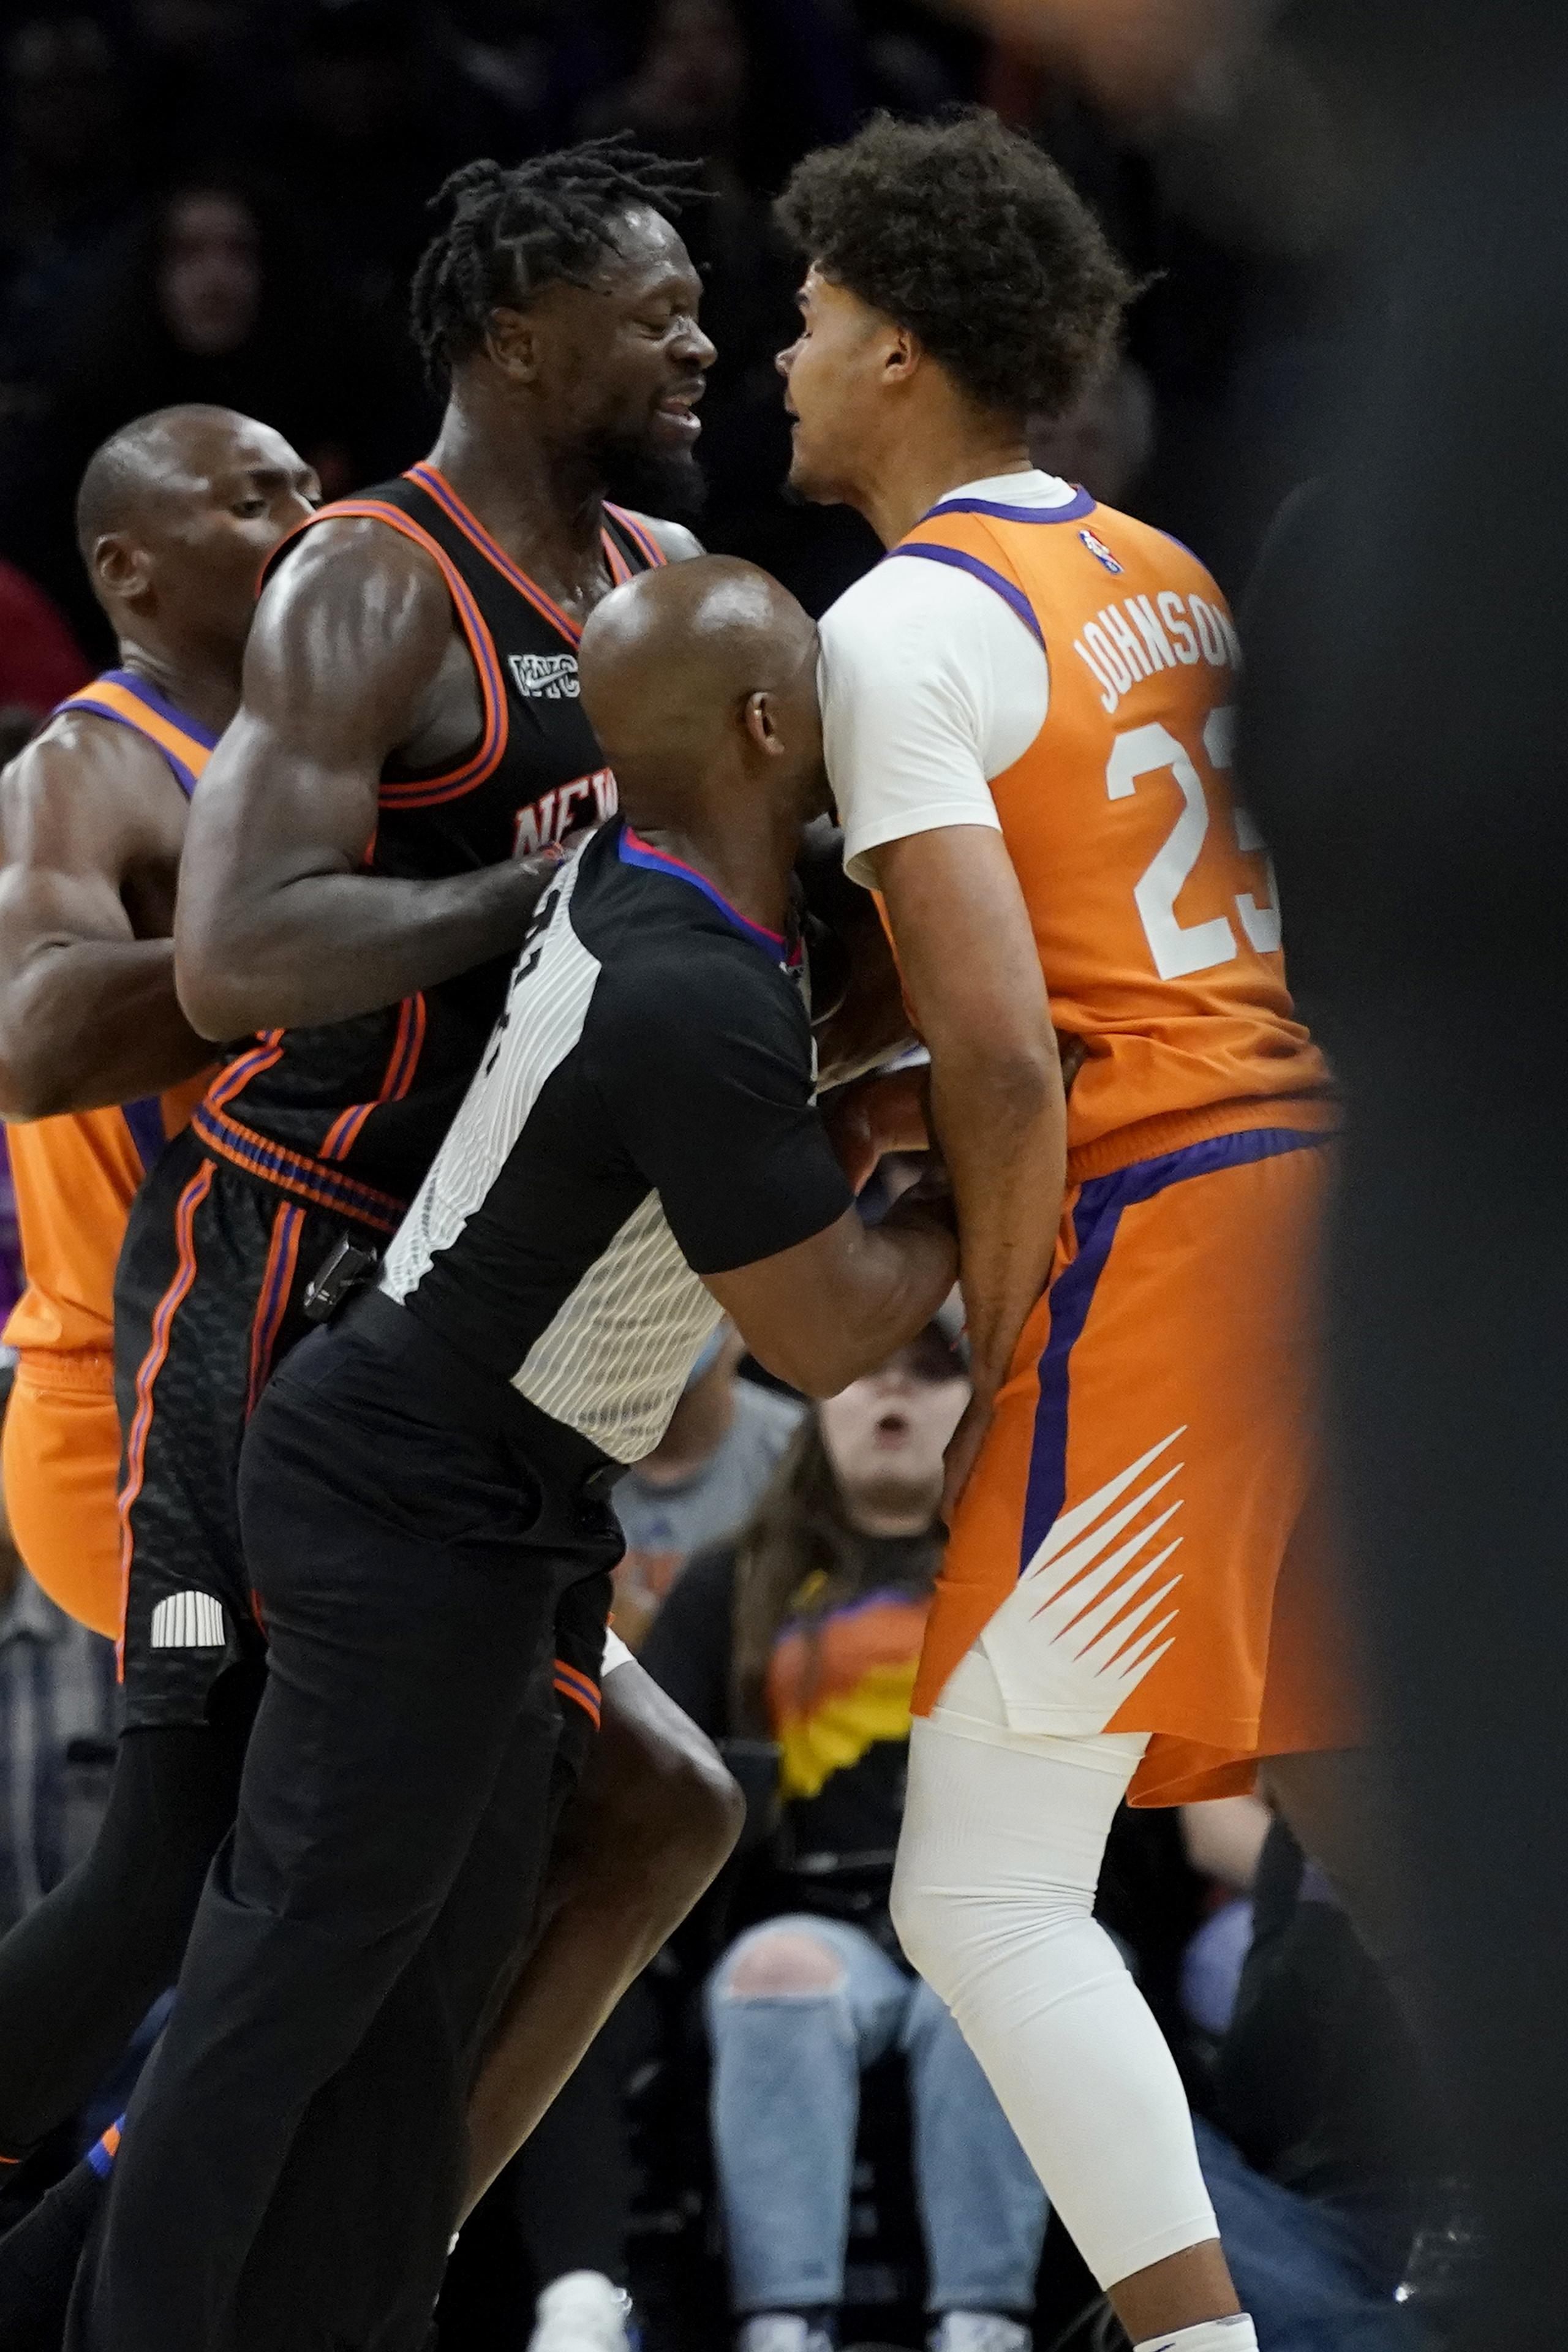 El alero Cameron Johnson (23), de los Suns de Phoenix, y Julius Randle, alero de los Knicks de Nueva York, son separados por un árbitro durante la segunda mitad del juego de baloncesto de la NBA, el viernes 4 de marzo de 2022, en Phoenix. Randle fue expulsado después de la jugada y los Suns derrotaron a los Knicks 115-114. (AP Foto/Matt York)